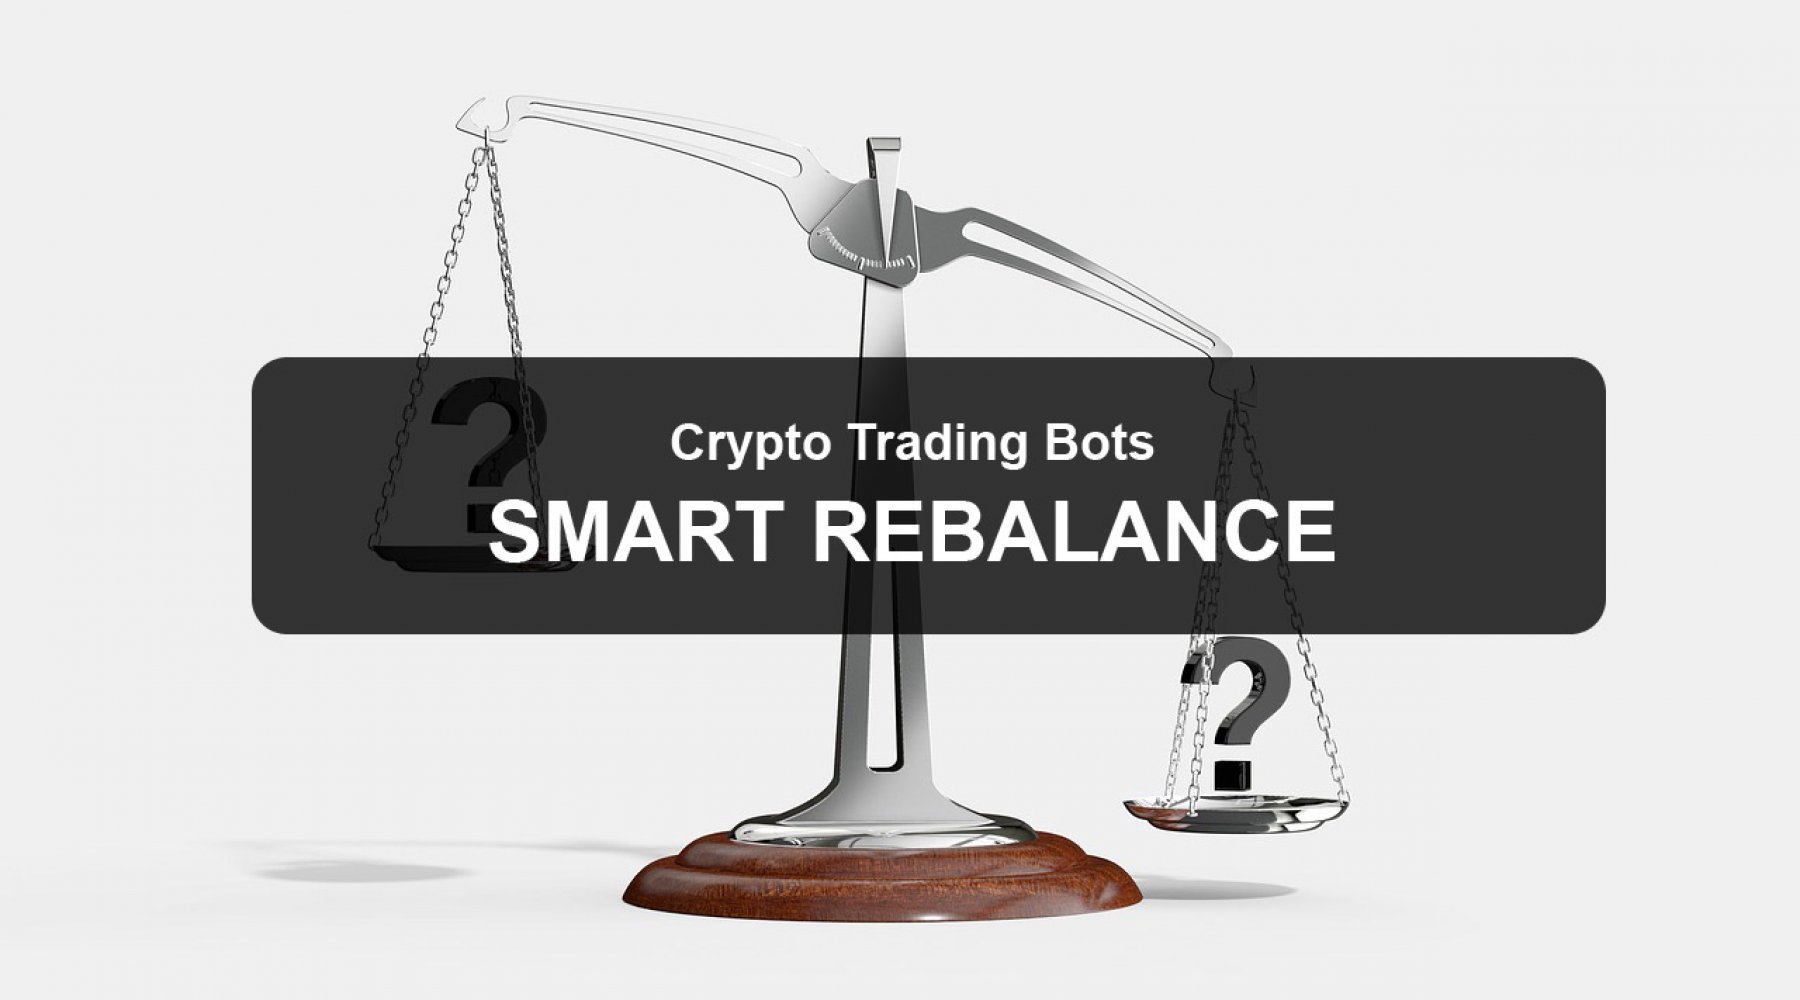 Balancing image about smart rebalance bots